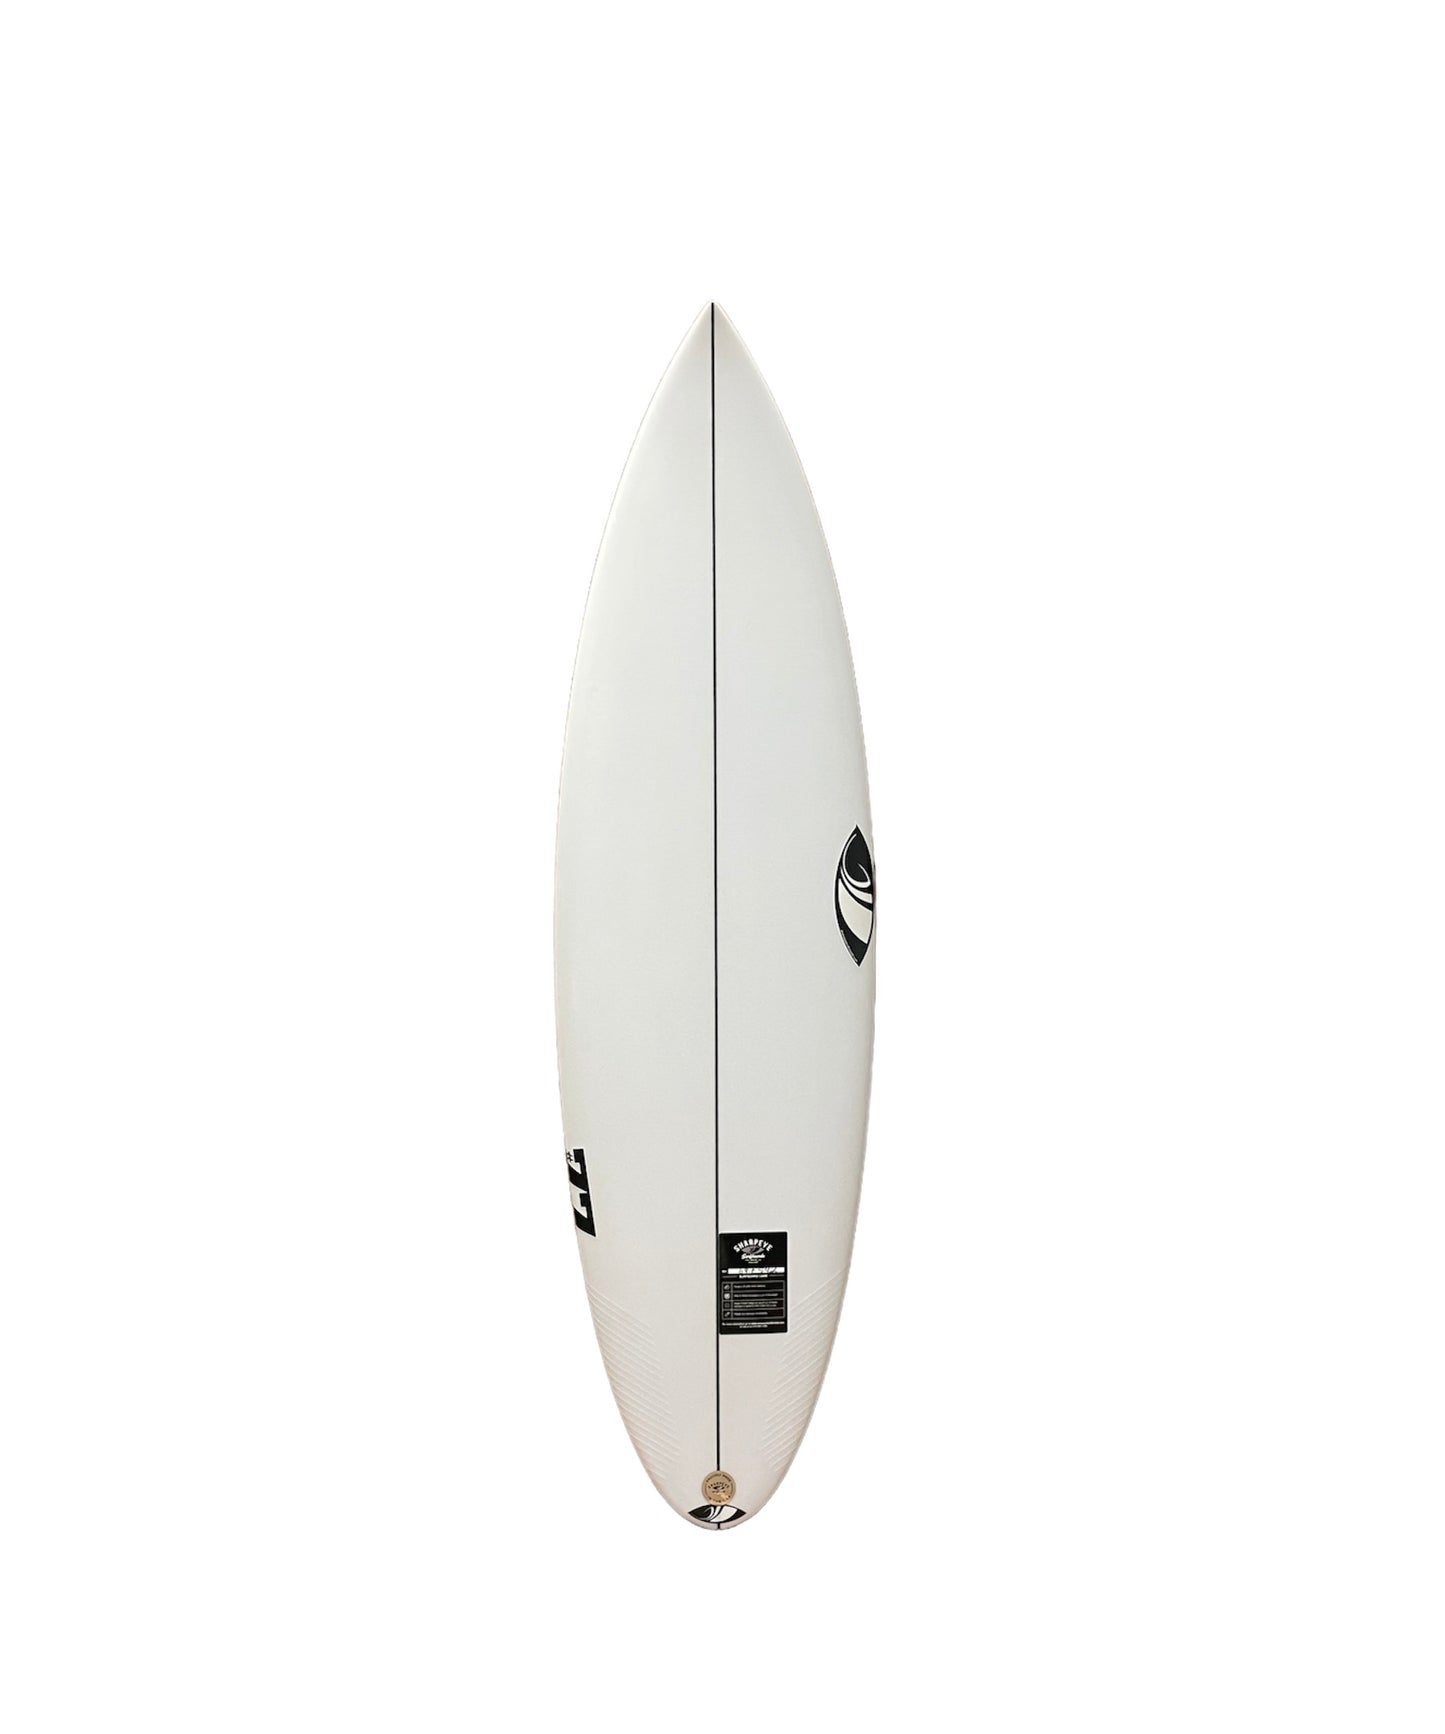 SHARP EYE #77 5'10" SURFBOARD